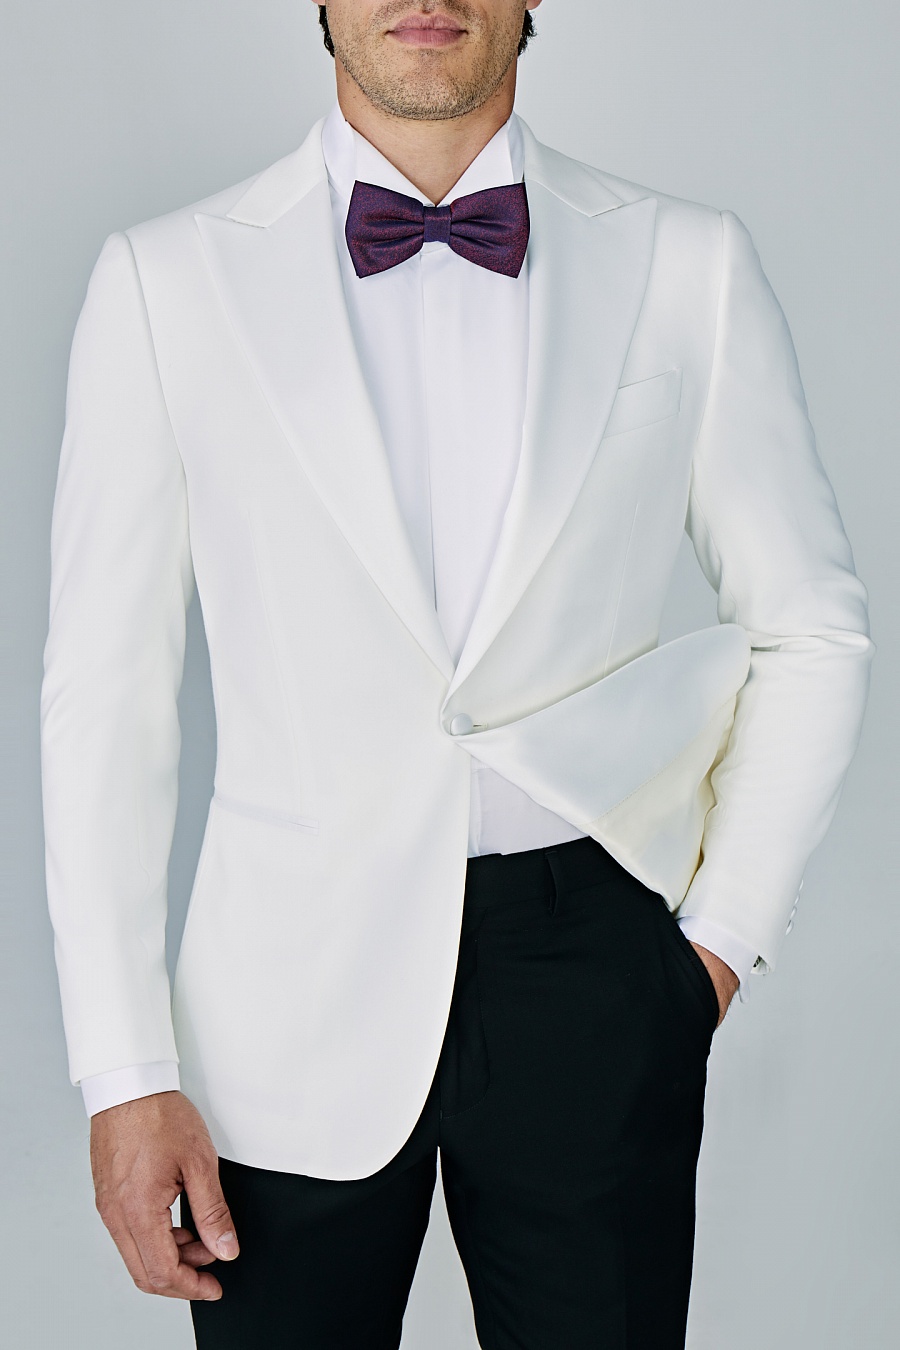 Белый пиджак-смокинг 717PA купить по цене 25 000 р. в интернет-магазинеAlbione в Москве и РФ